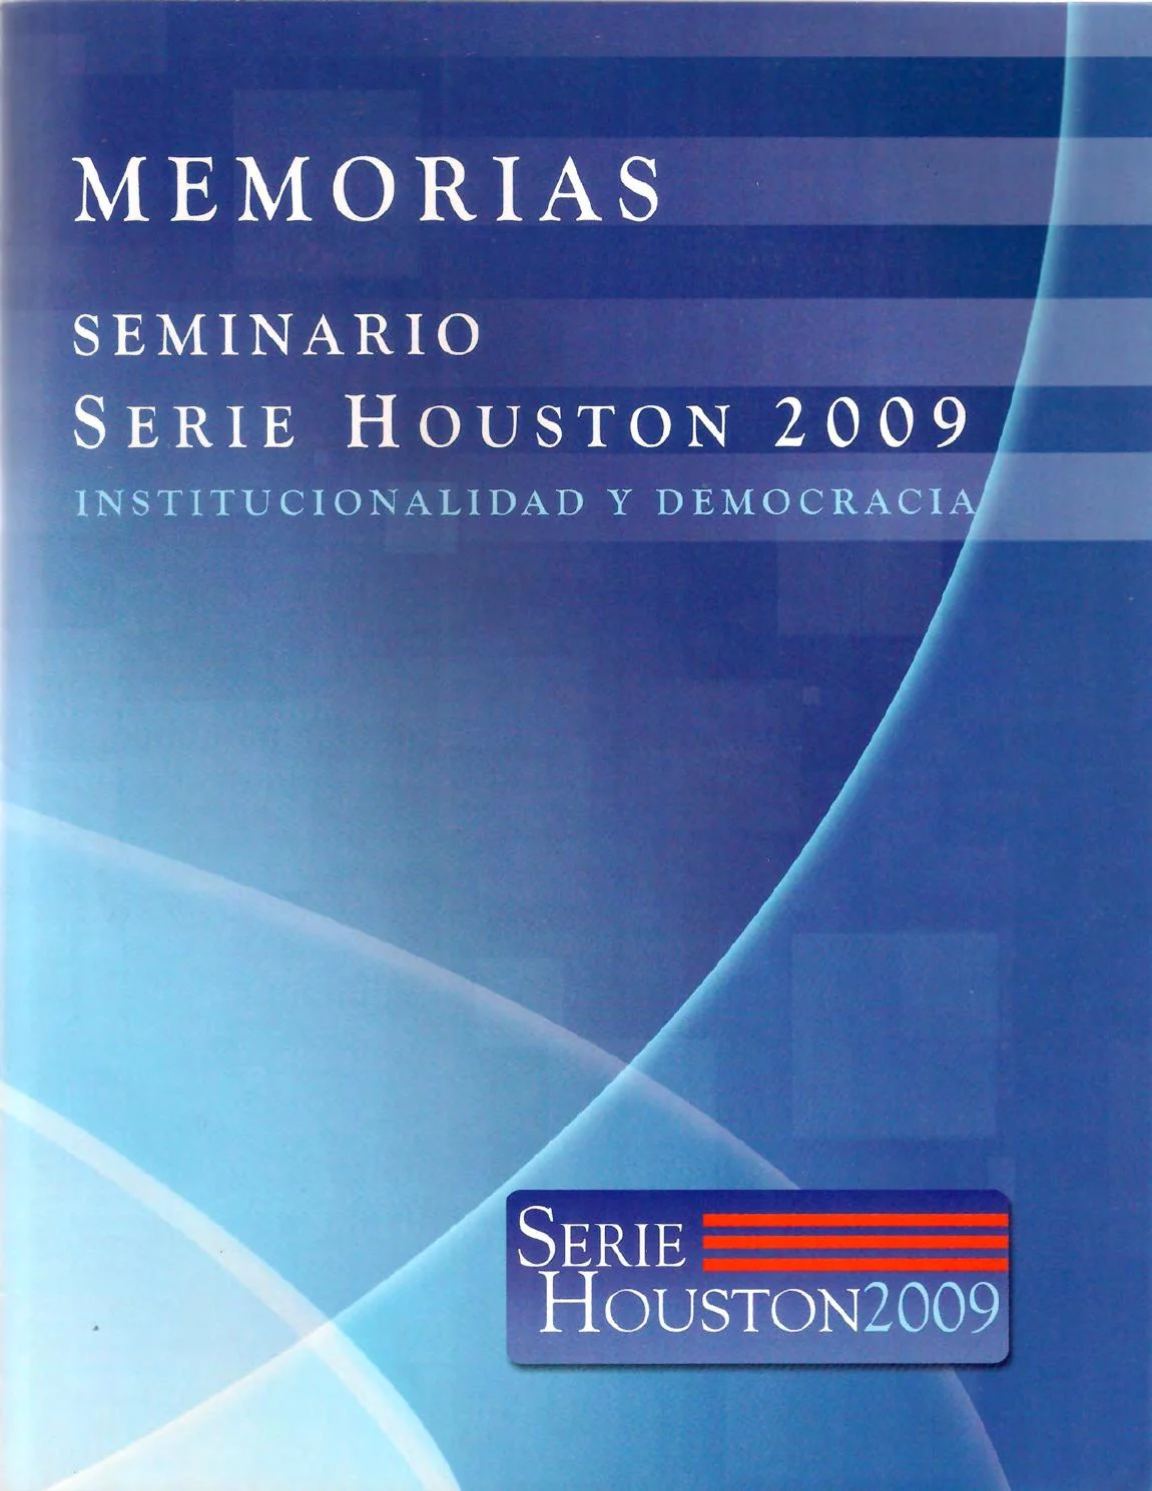 Memorias Seminario Serie Houston 2009 Institucionalidad y democracia